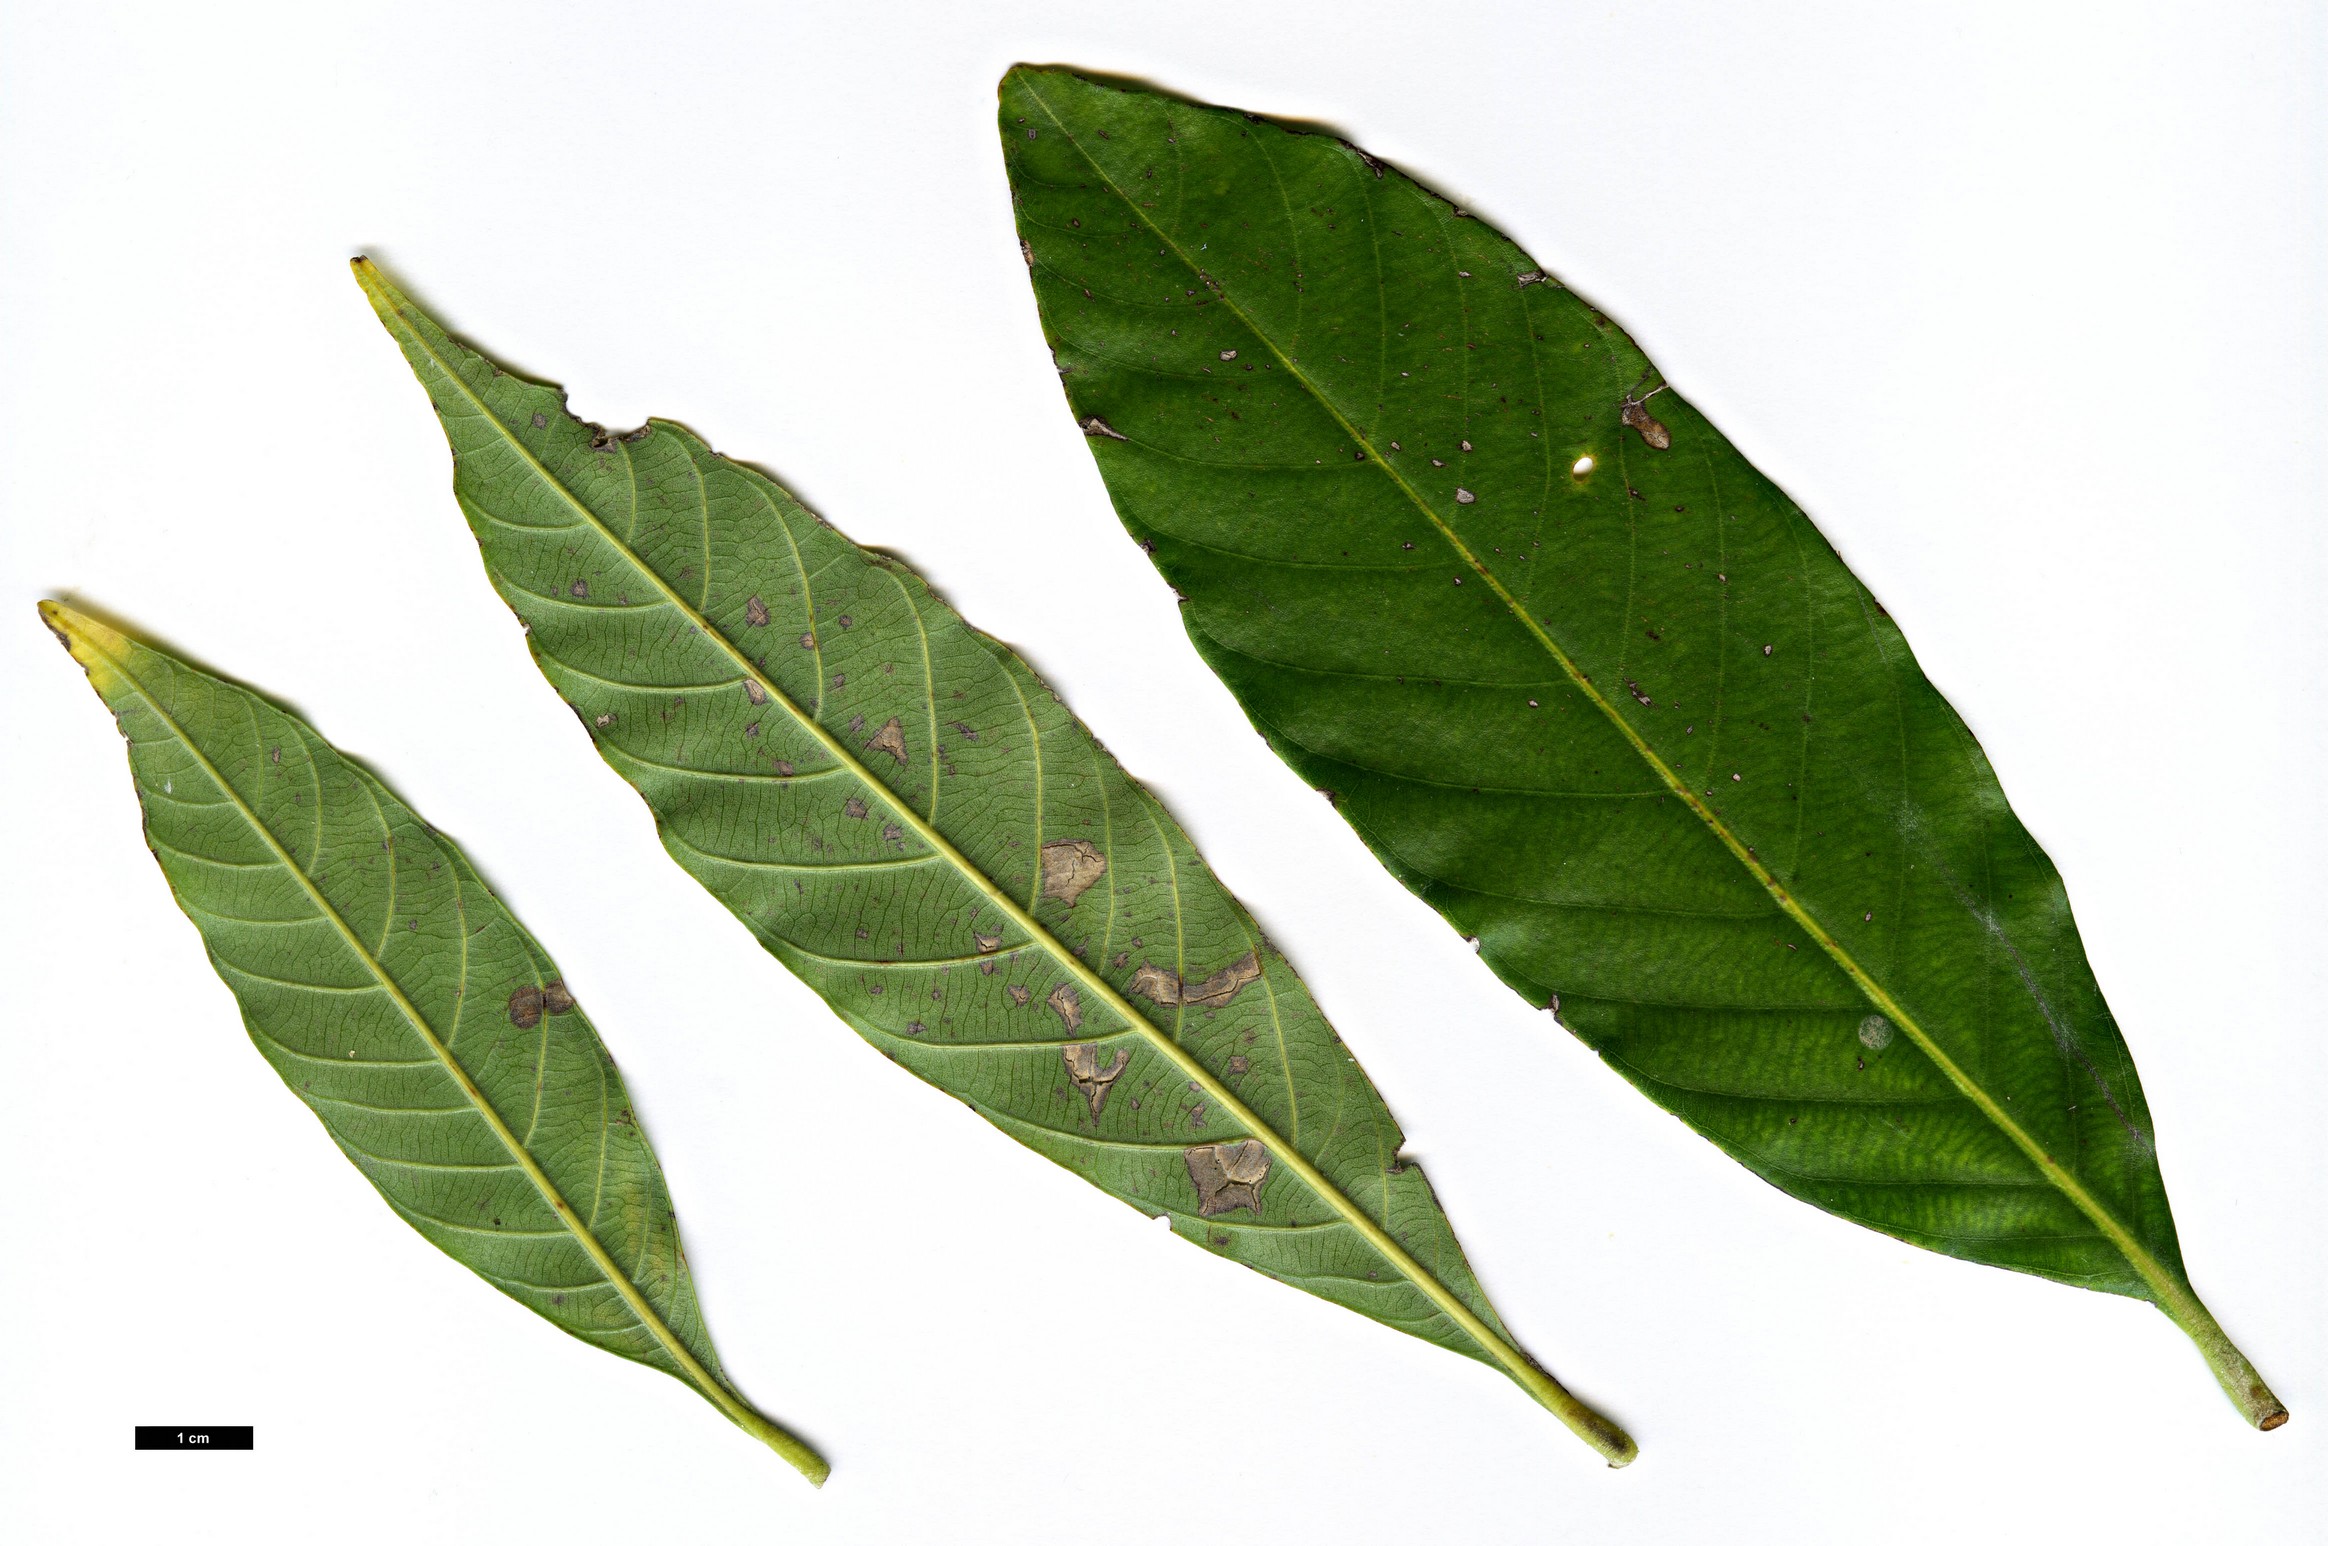 High resolution image: Family: Fagaceae - Genus: Lithocarpus - Taxon: lepidocarpus